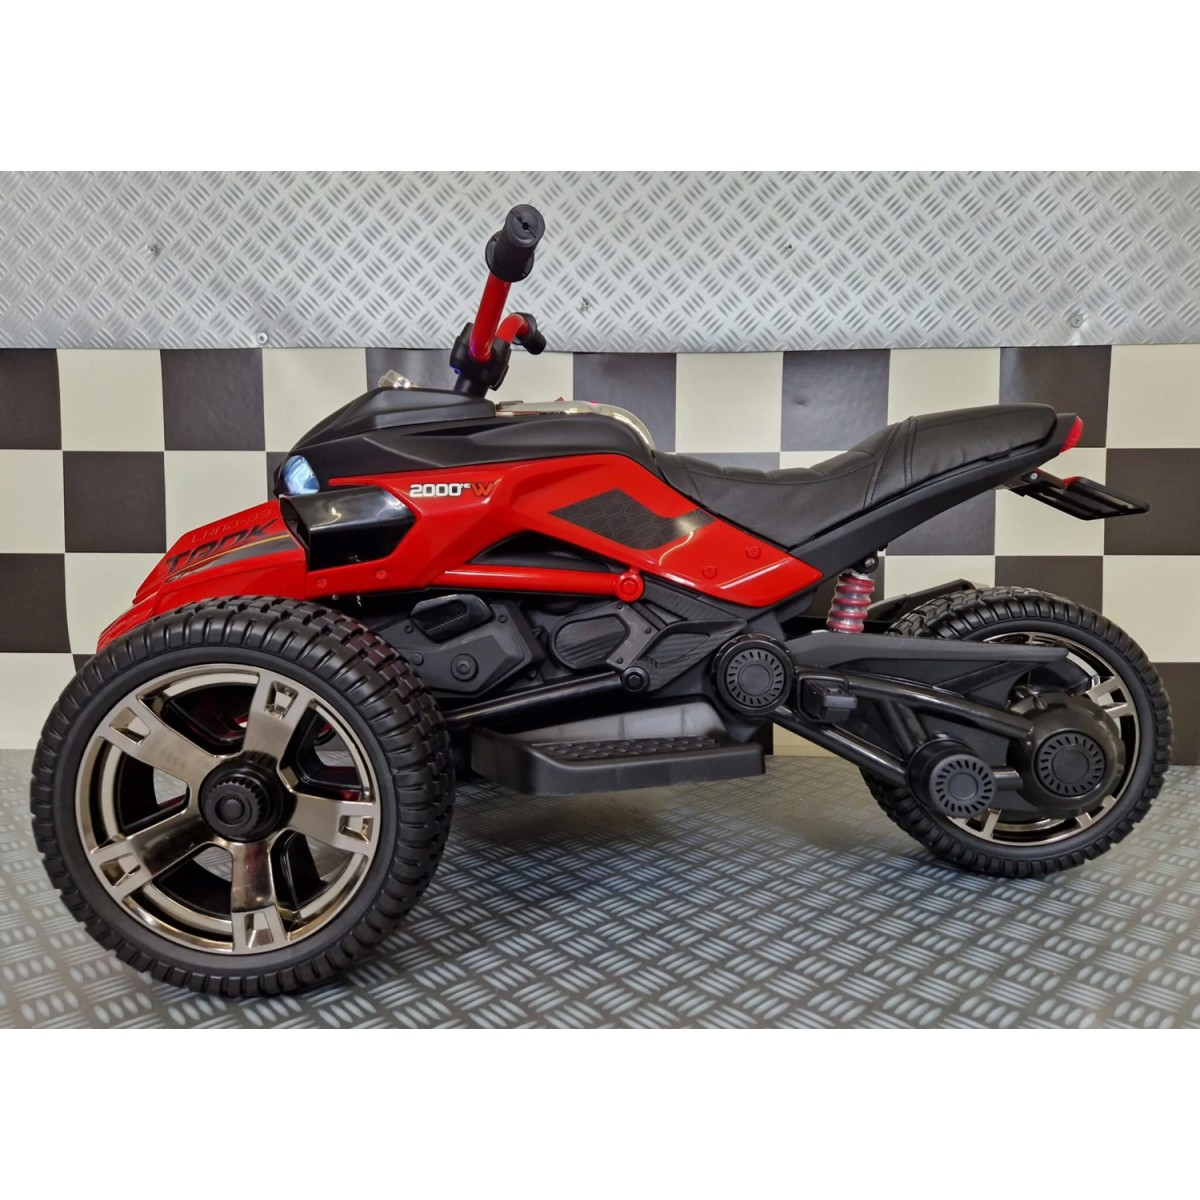 Moto Elettrica per Bambini Spyder a Batteria Motocicletta 3 Ruote Rosso